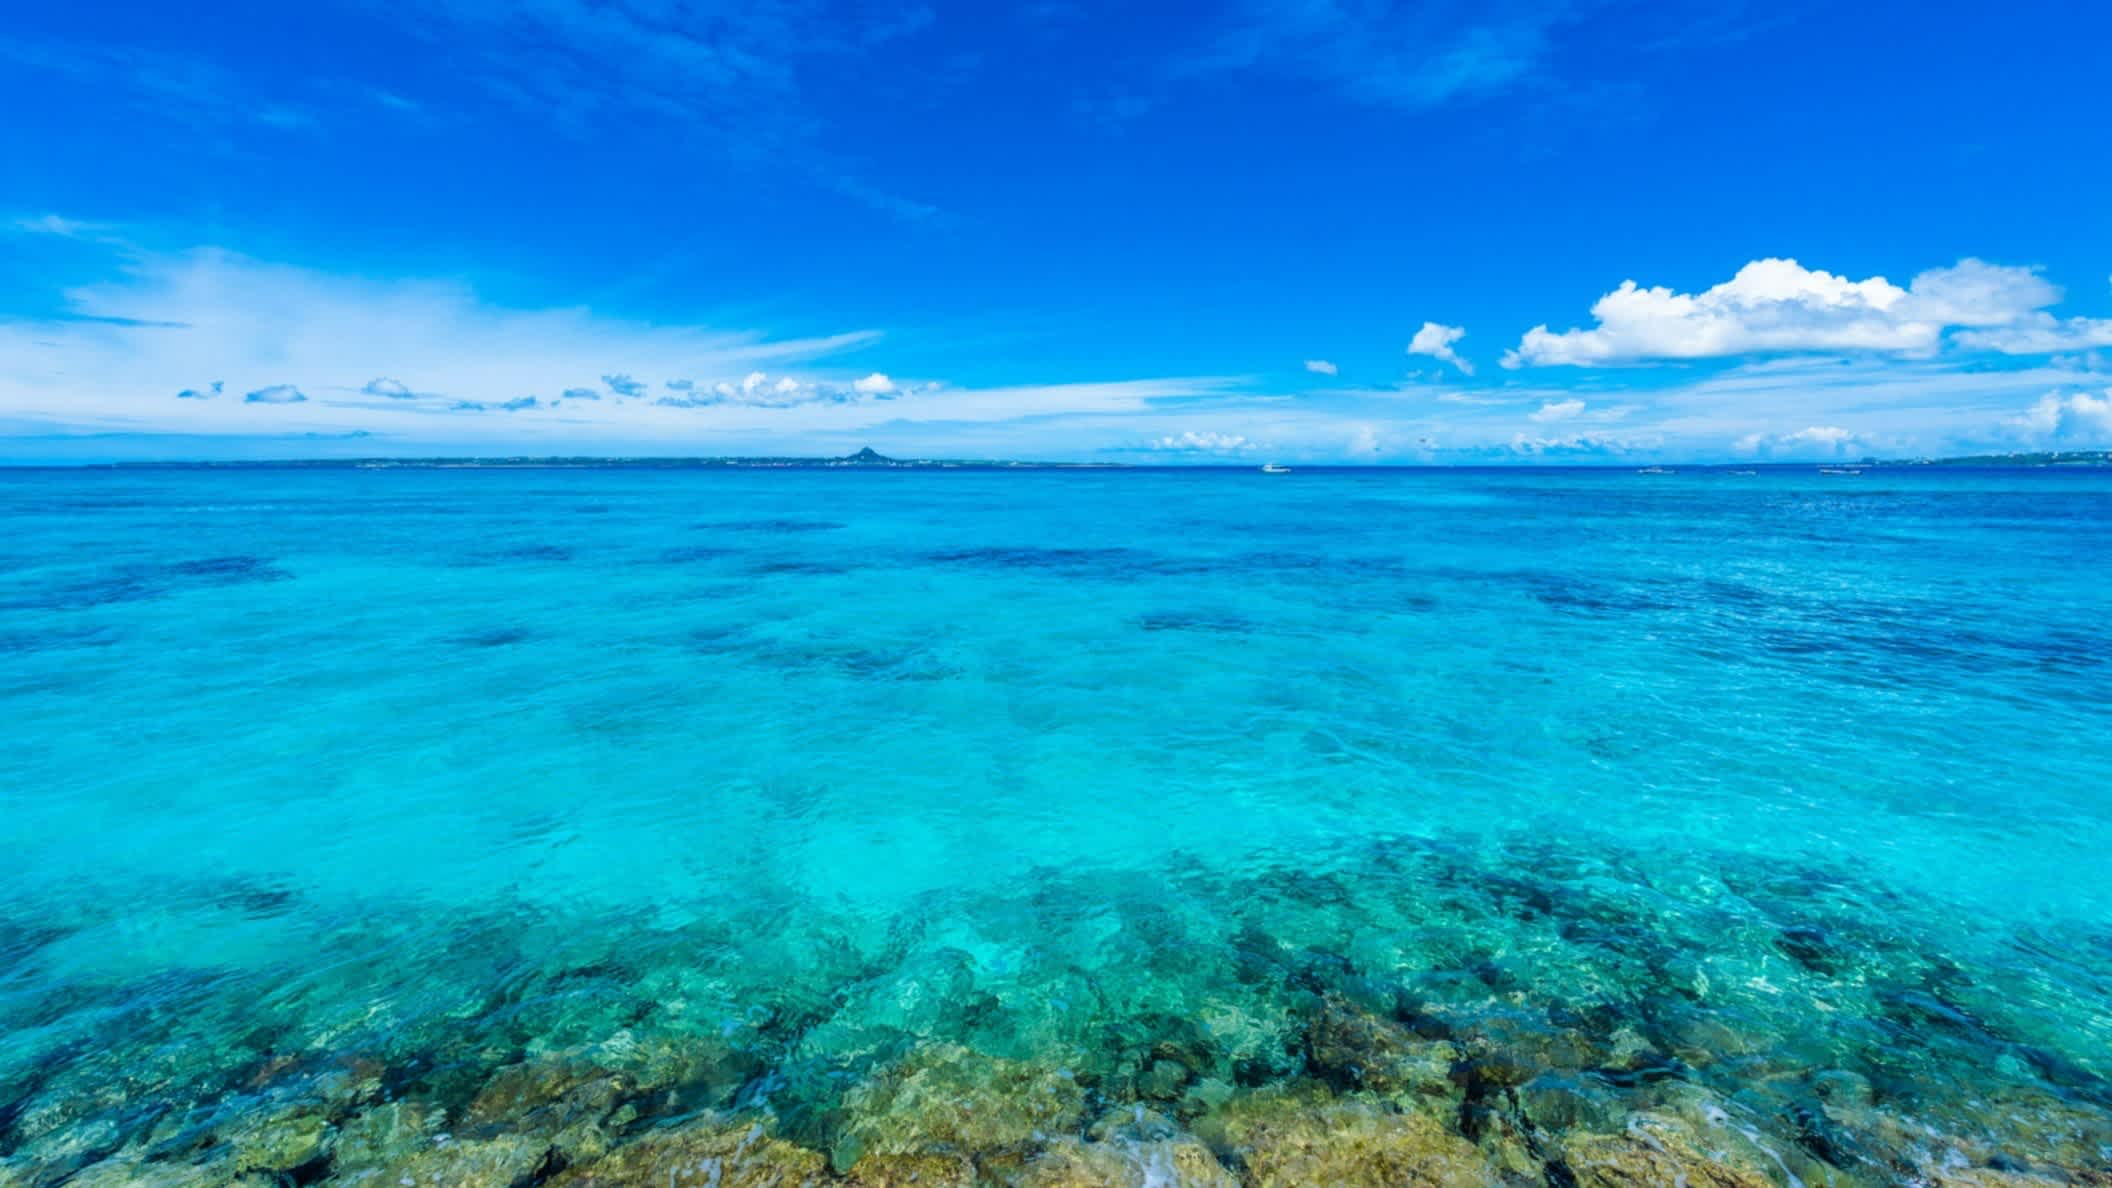 Türkisblaues, klares Meer am Emerald Beach, Okinawa, Japan bei blauem Himmel.